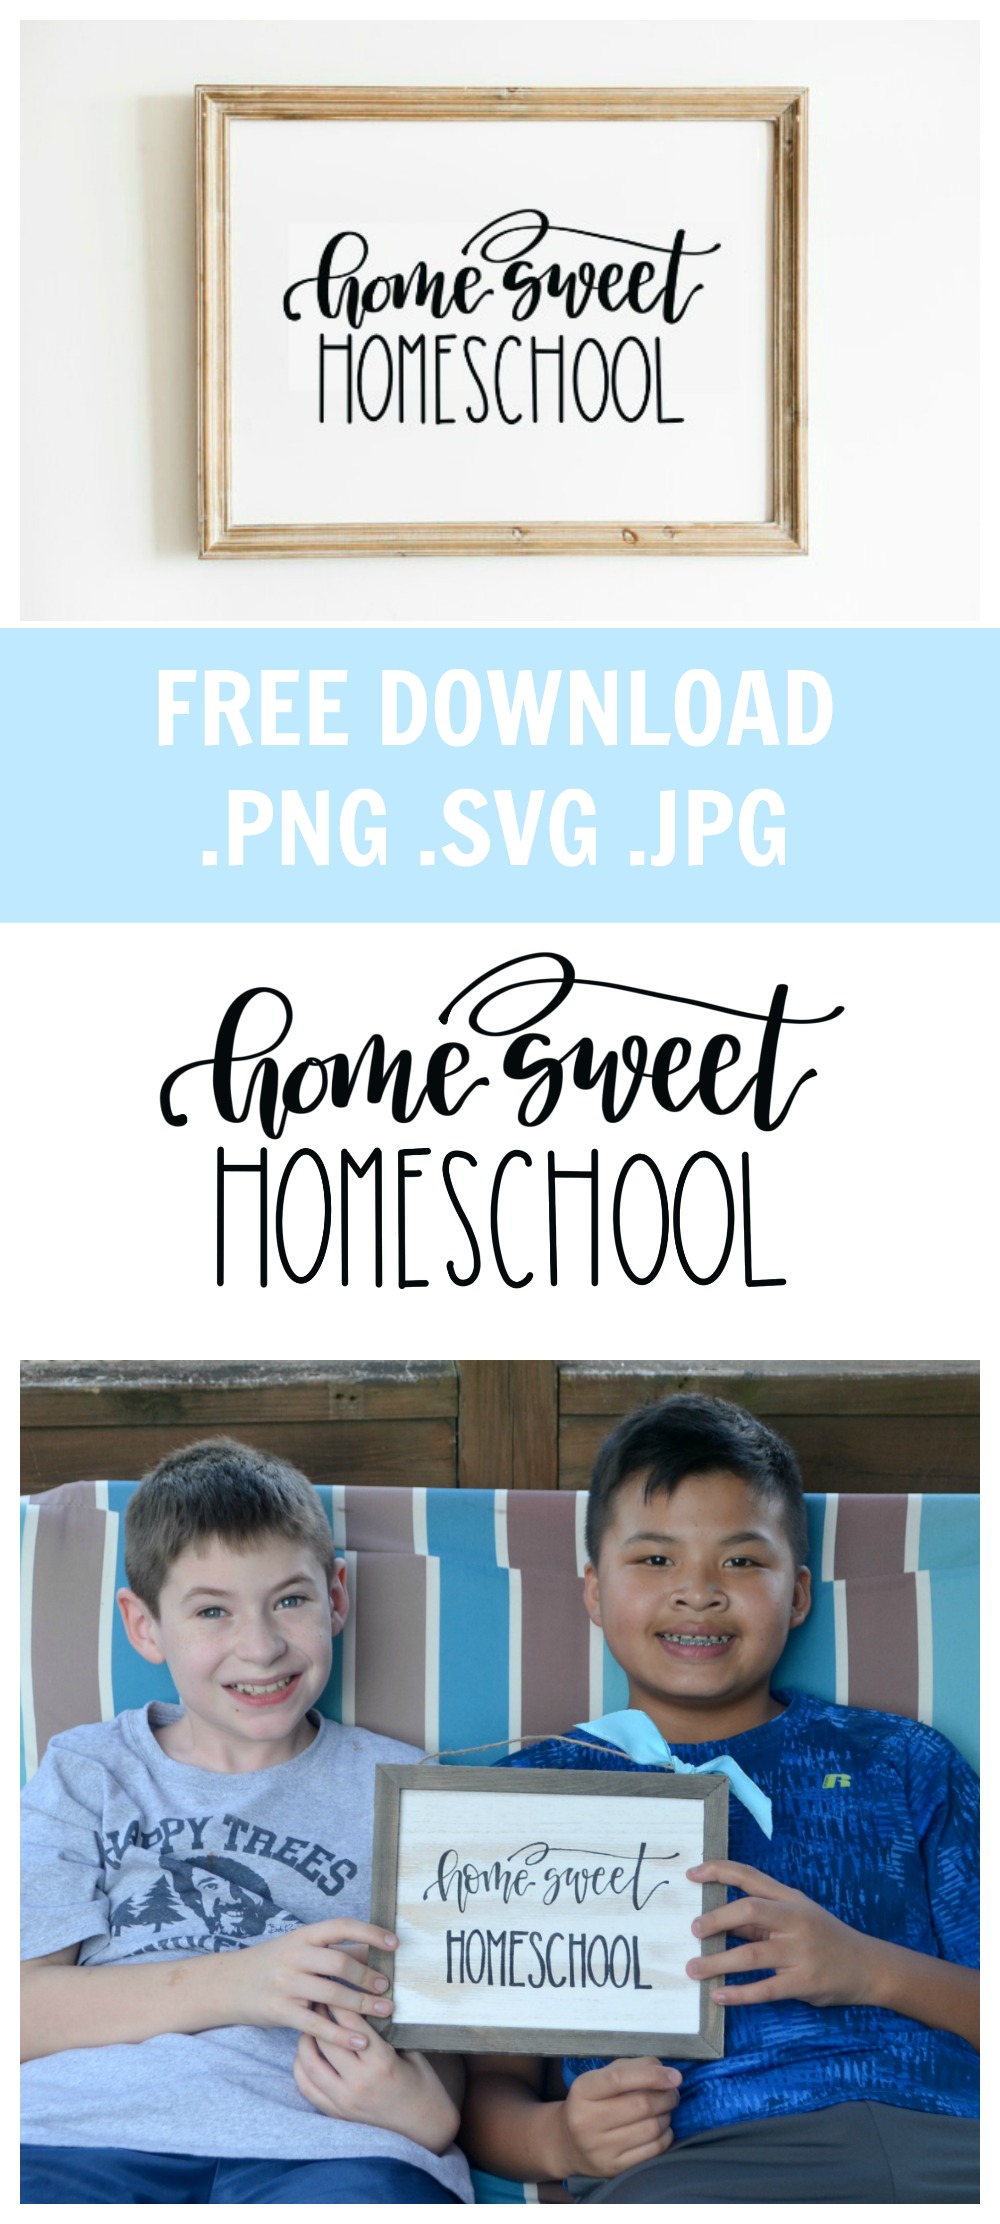 Home Sweet Homeschool: Free Download PNG, SVG, JPG